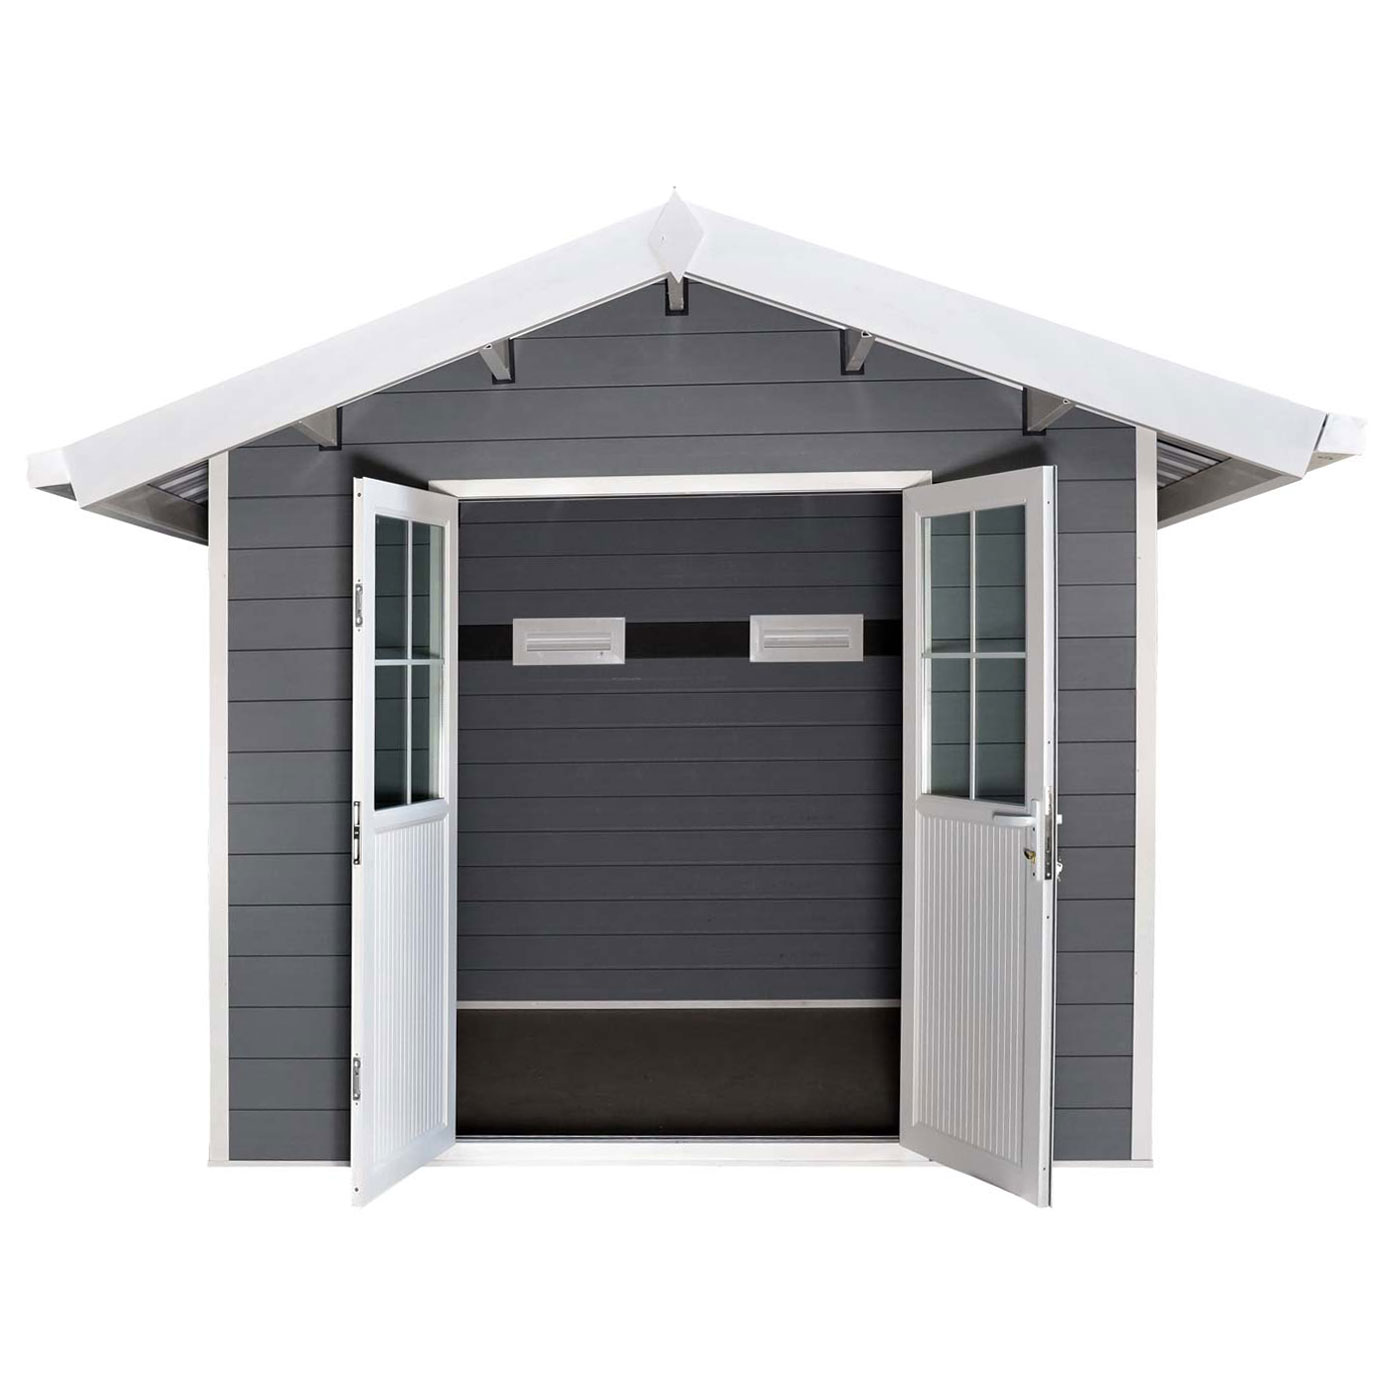 HWC-J94 Gartenhaus mit Satteldach Frontansicht Türen offen